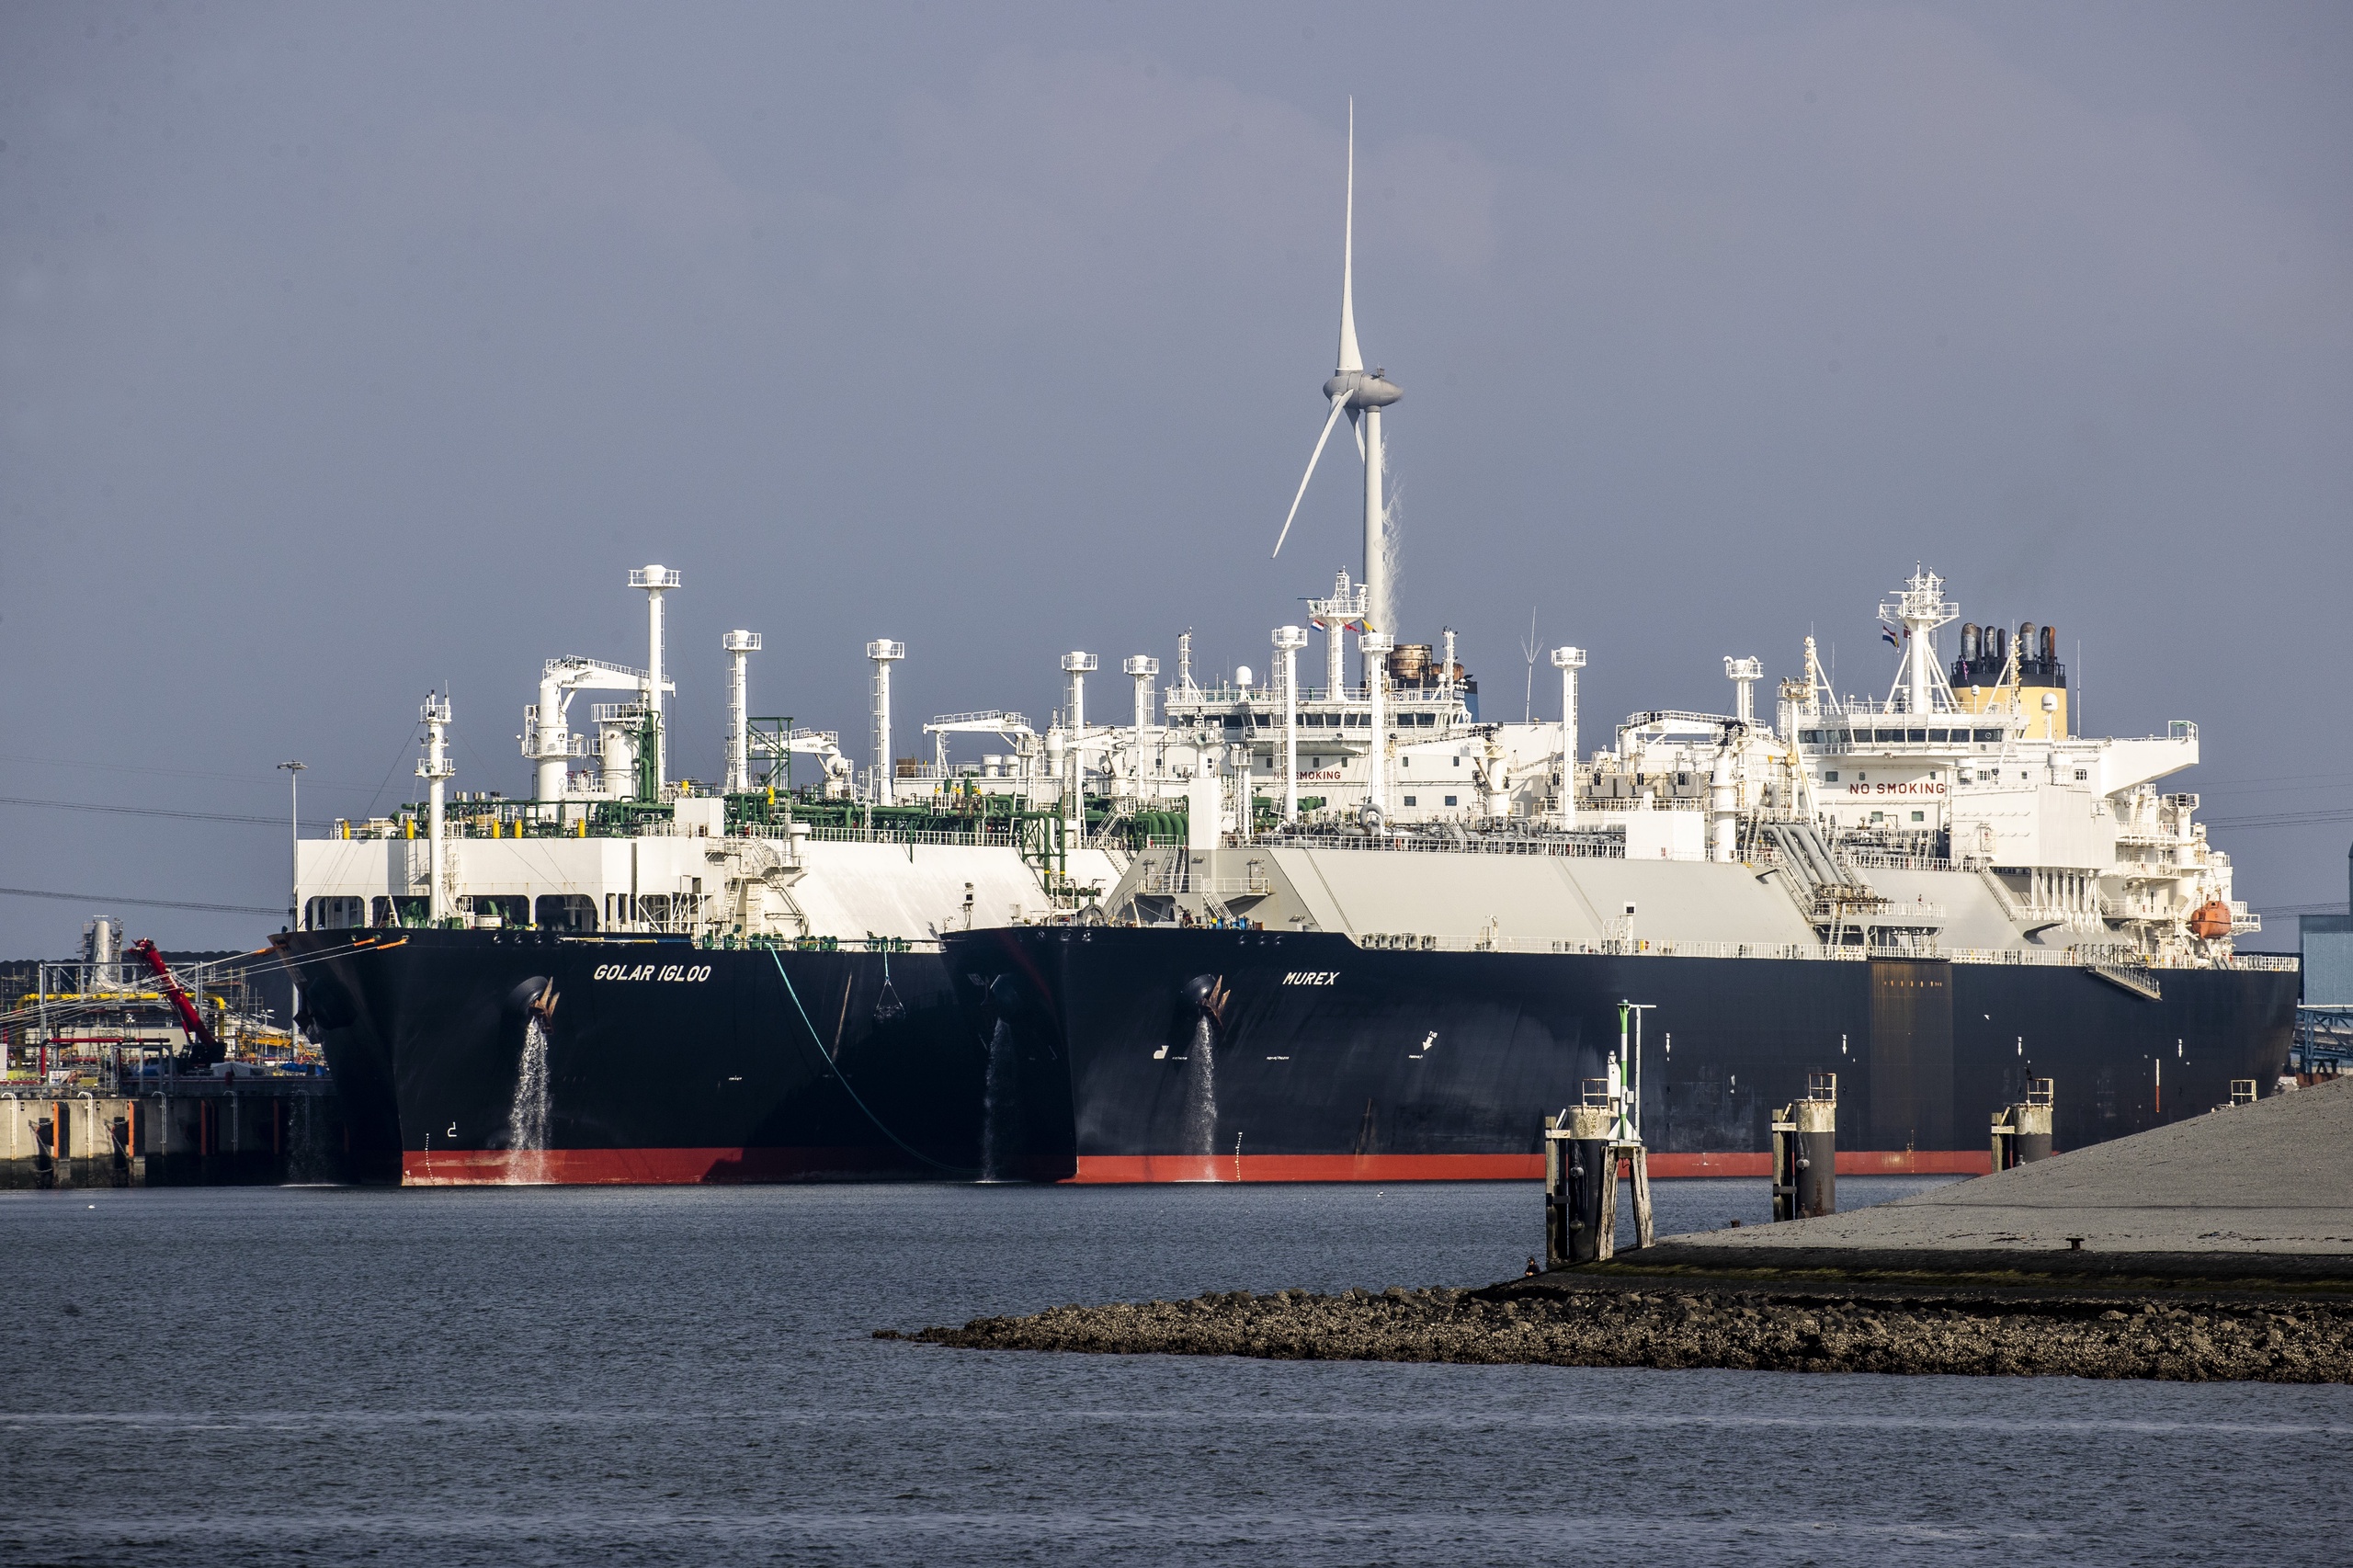 Het Duitse energieconcern RWE heeft een vijftienjarig contract afgesloten voor de import van vloeibaar gemaakt aardgas (lng) uit de Verenigde Staten.